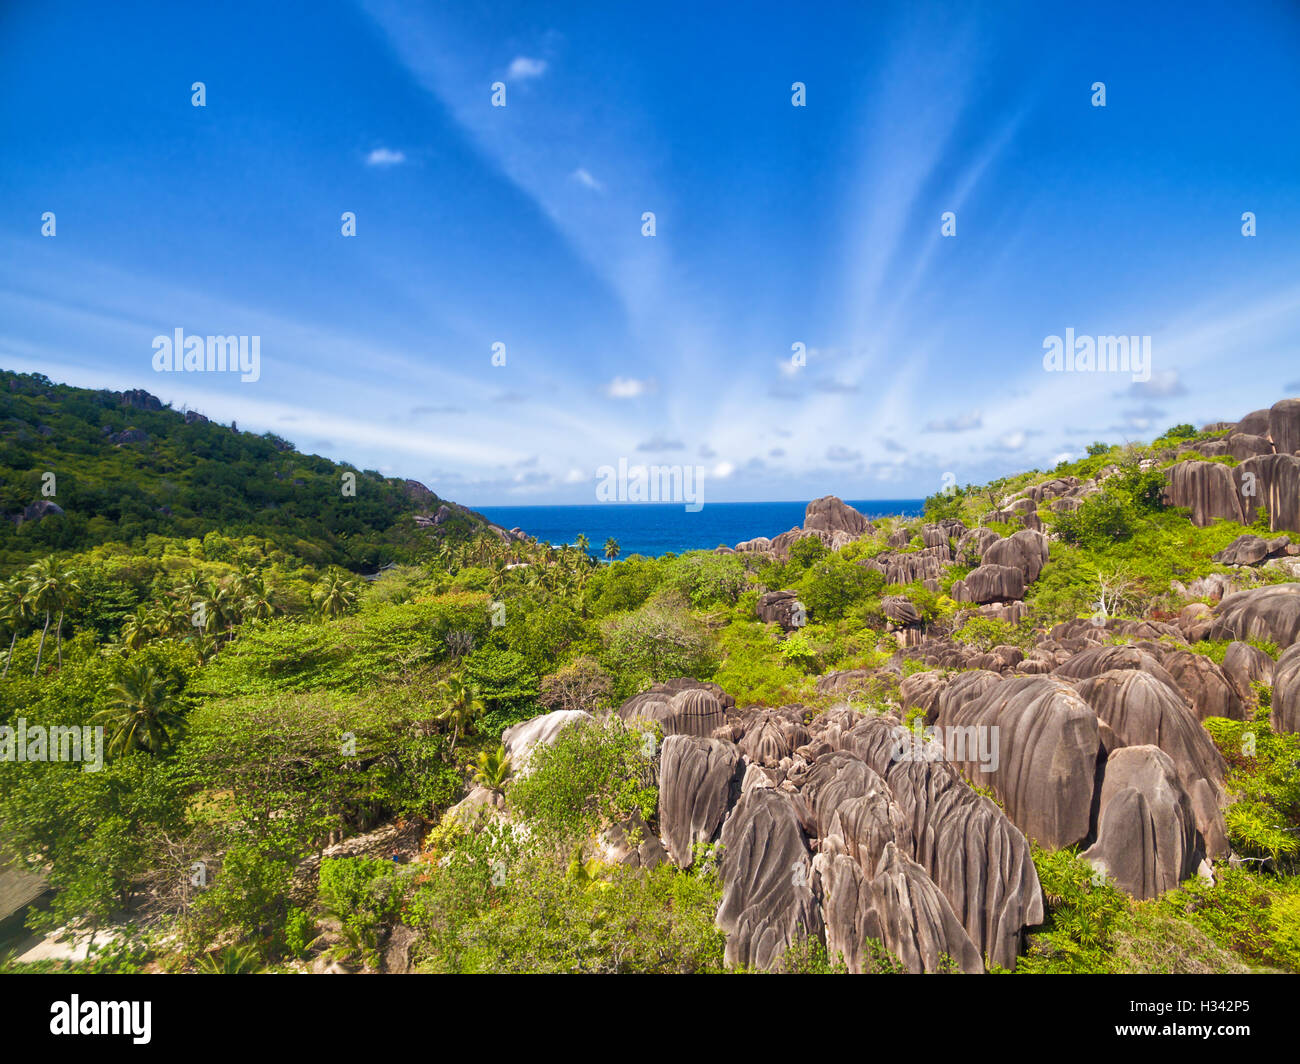 Seychelles belle île tropicale, rochers de granit typique Banque D'Images